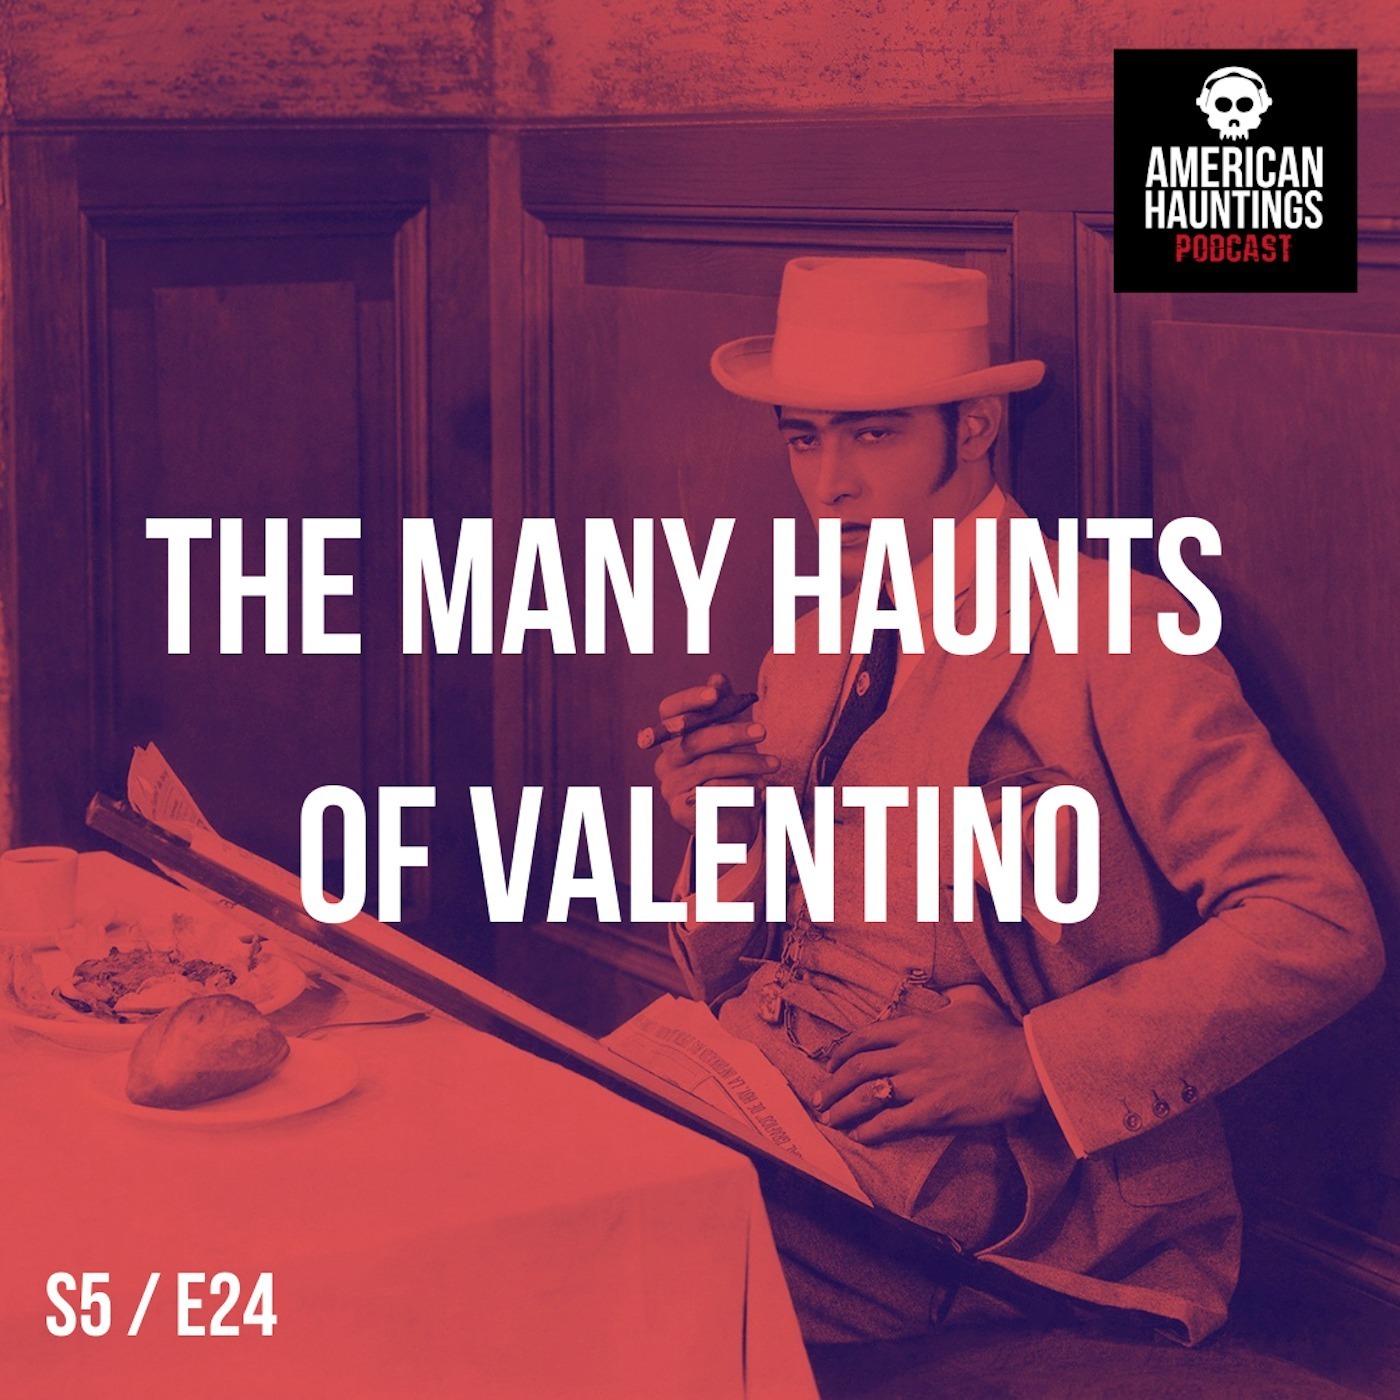 The Many Haunts Of Rudolph Valentino